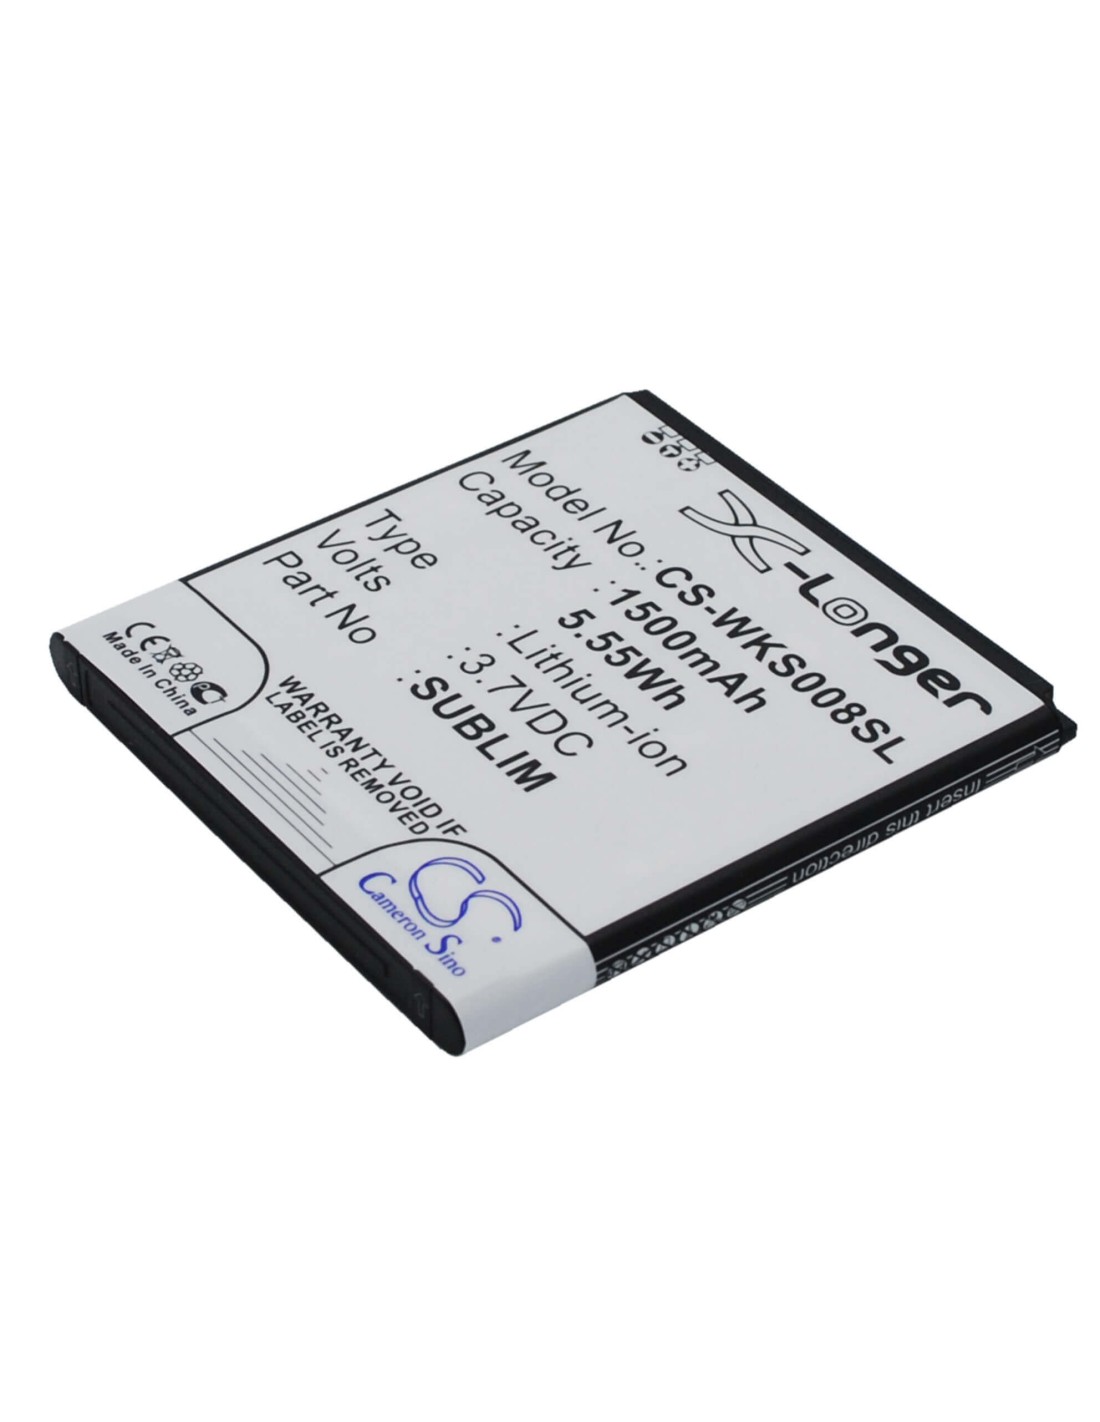 Battery for Fly IQ442 3.7V, 1500mAh - 5.55Wh